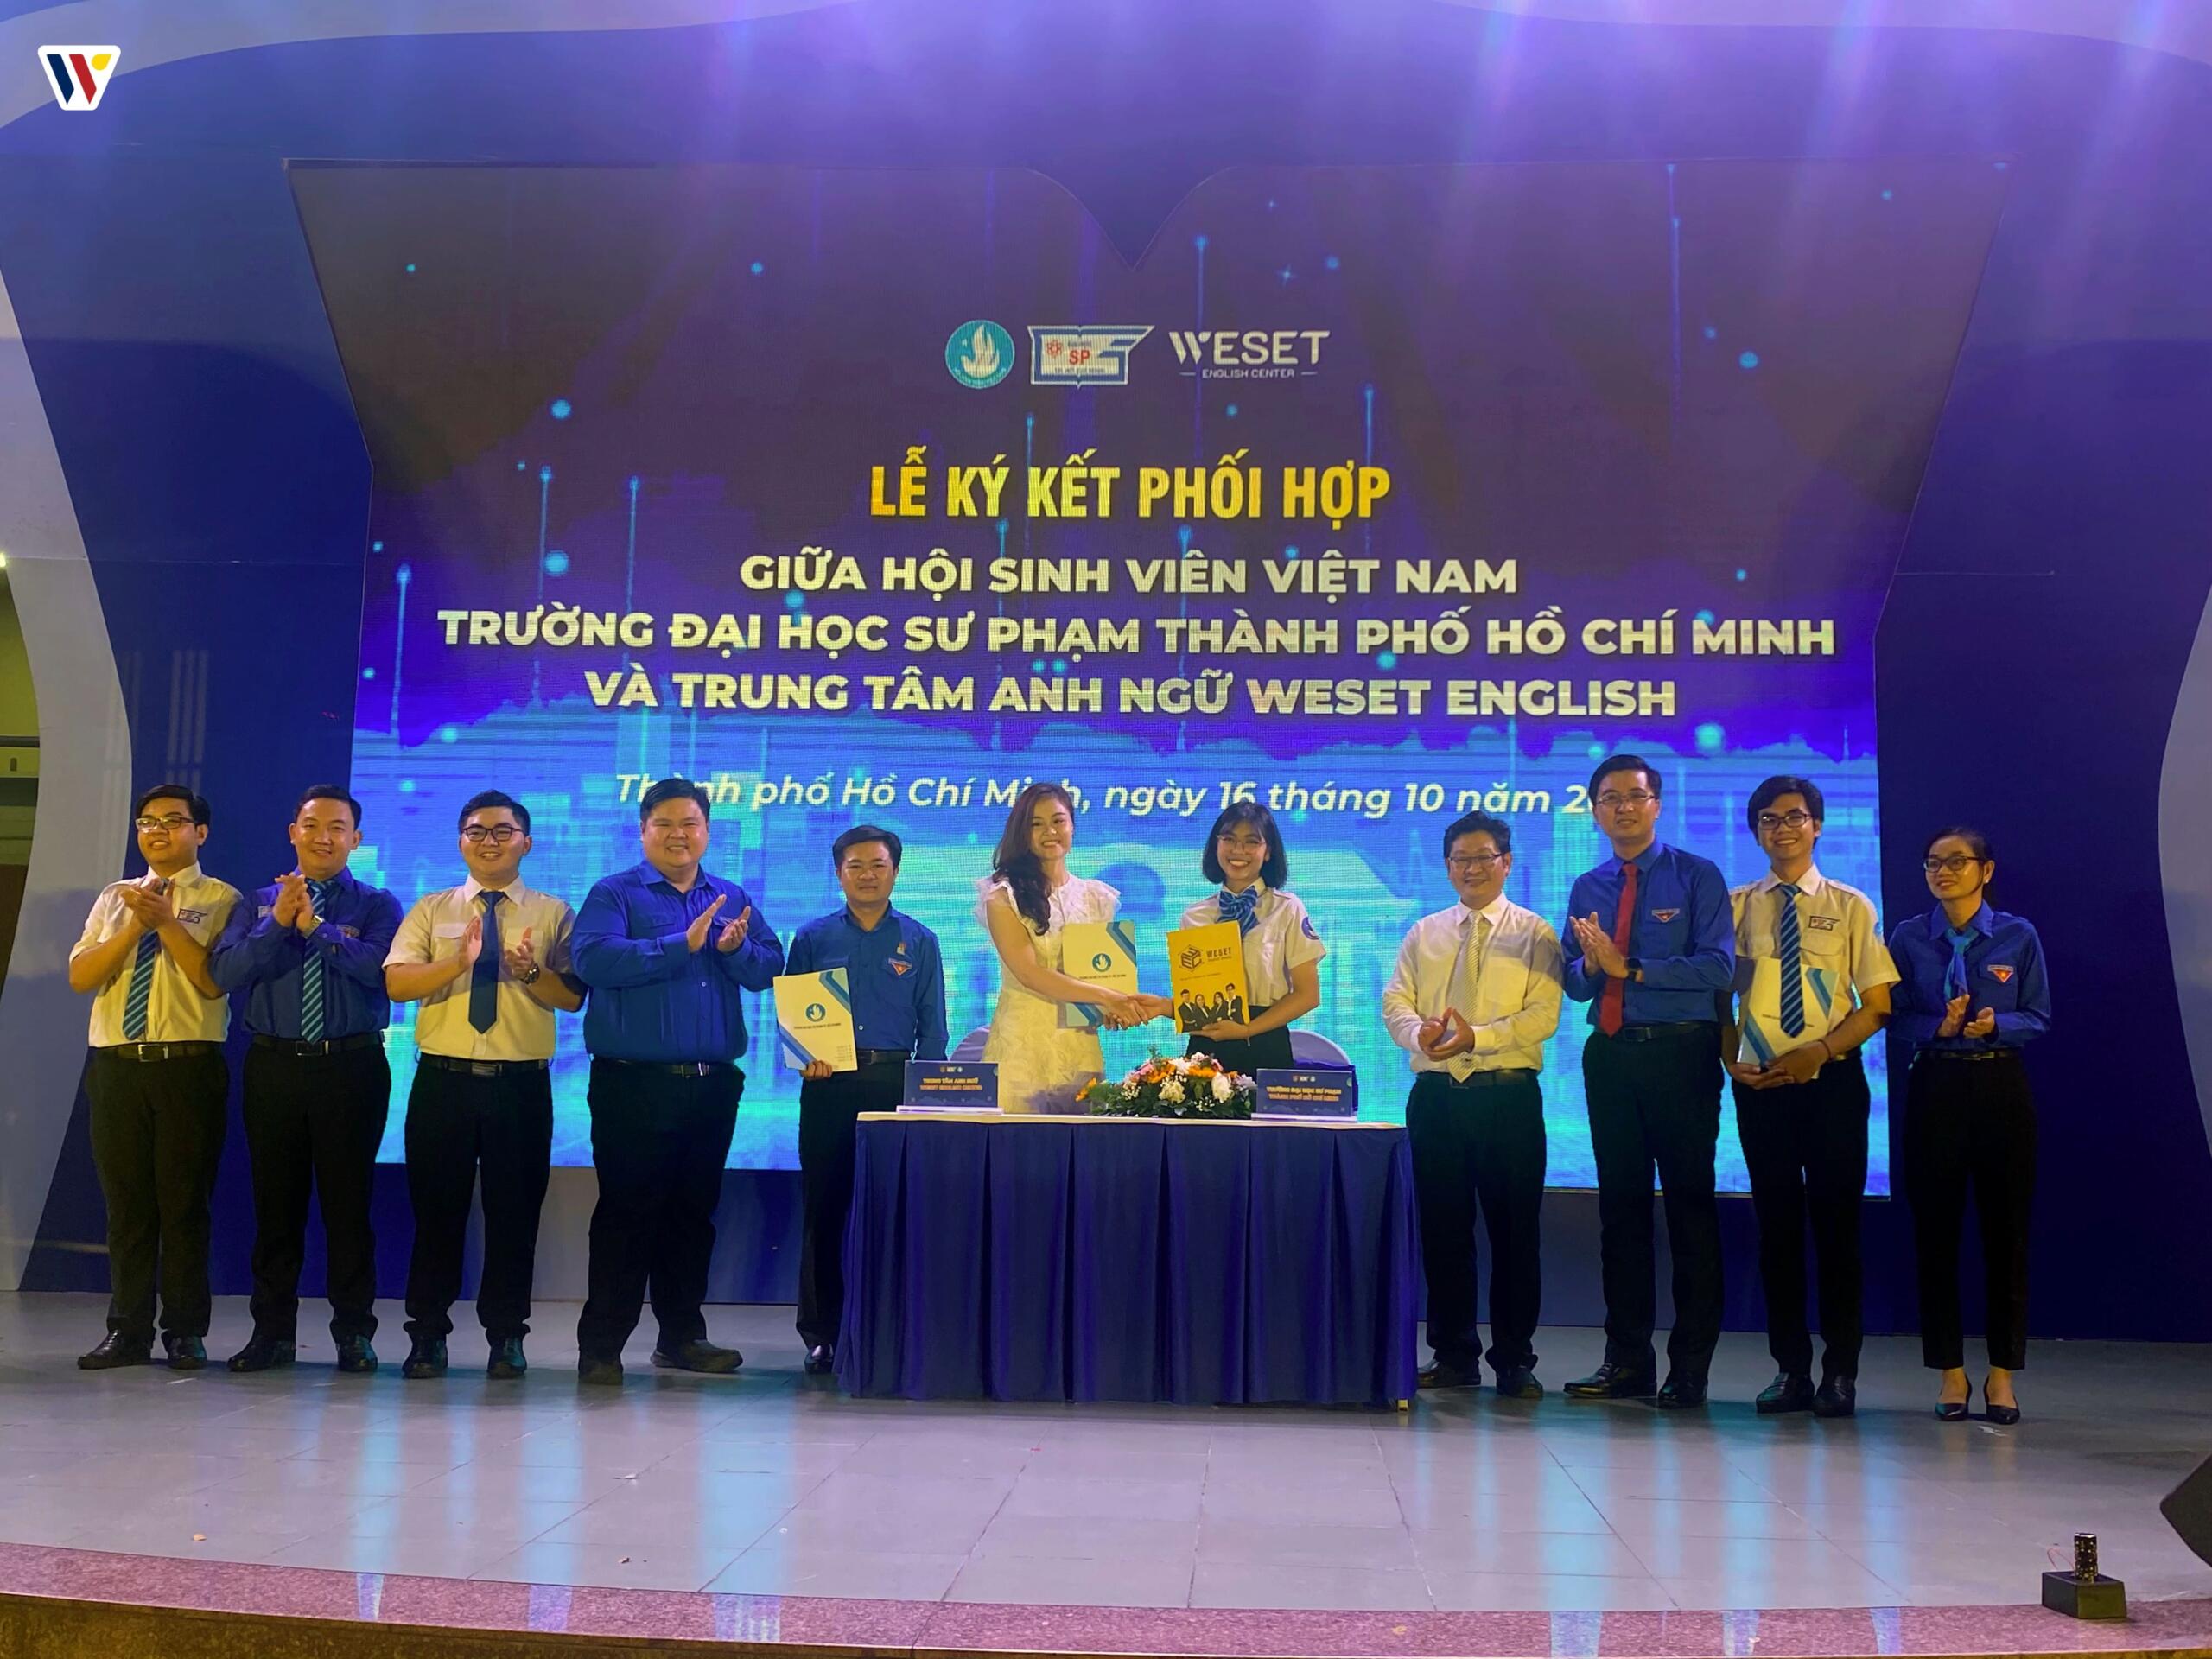  WESET ký kết hợp tác cùng Hội Sinh viên Việt Nam – Trường Đại học Sư phạm TP.HCM